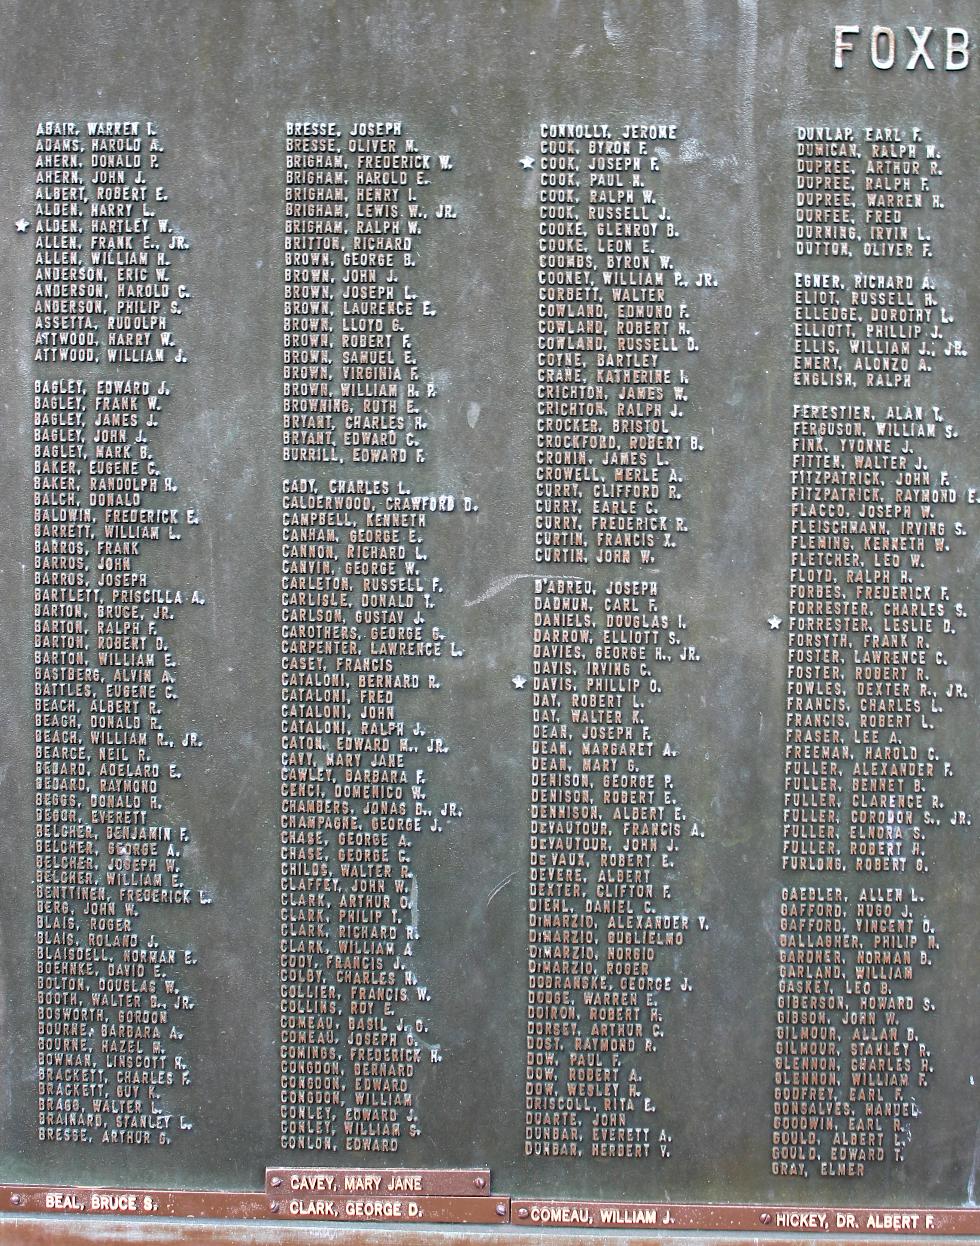 Foxboro Massachusetts World War II Veterans Memorial